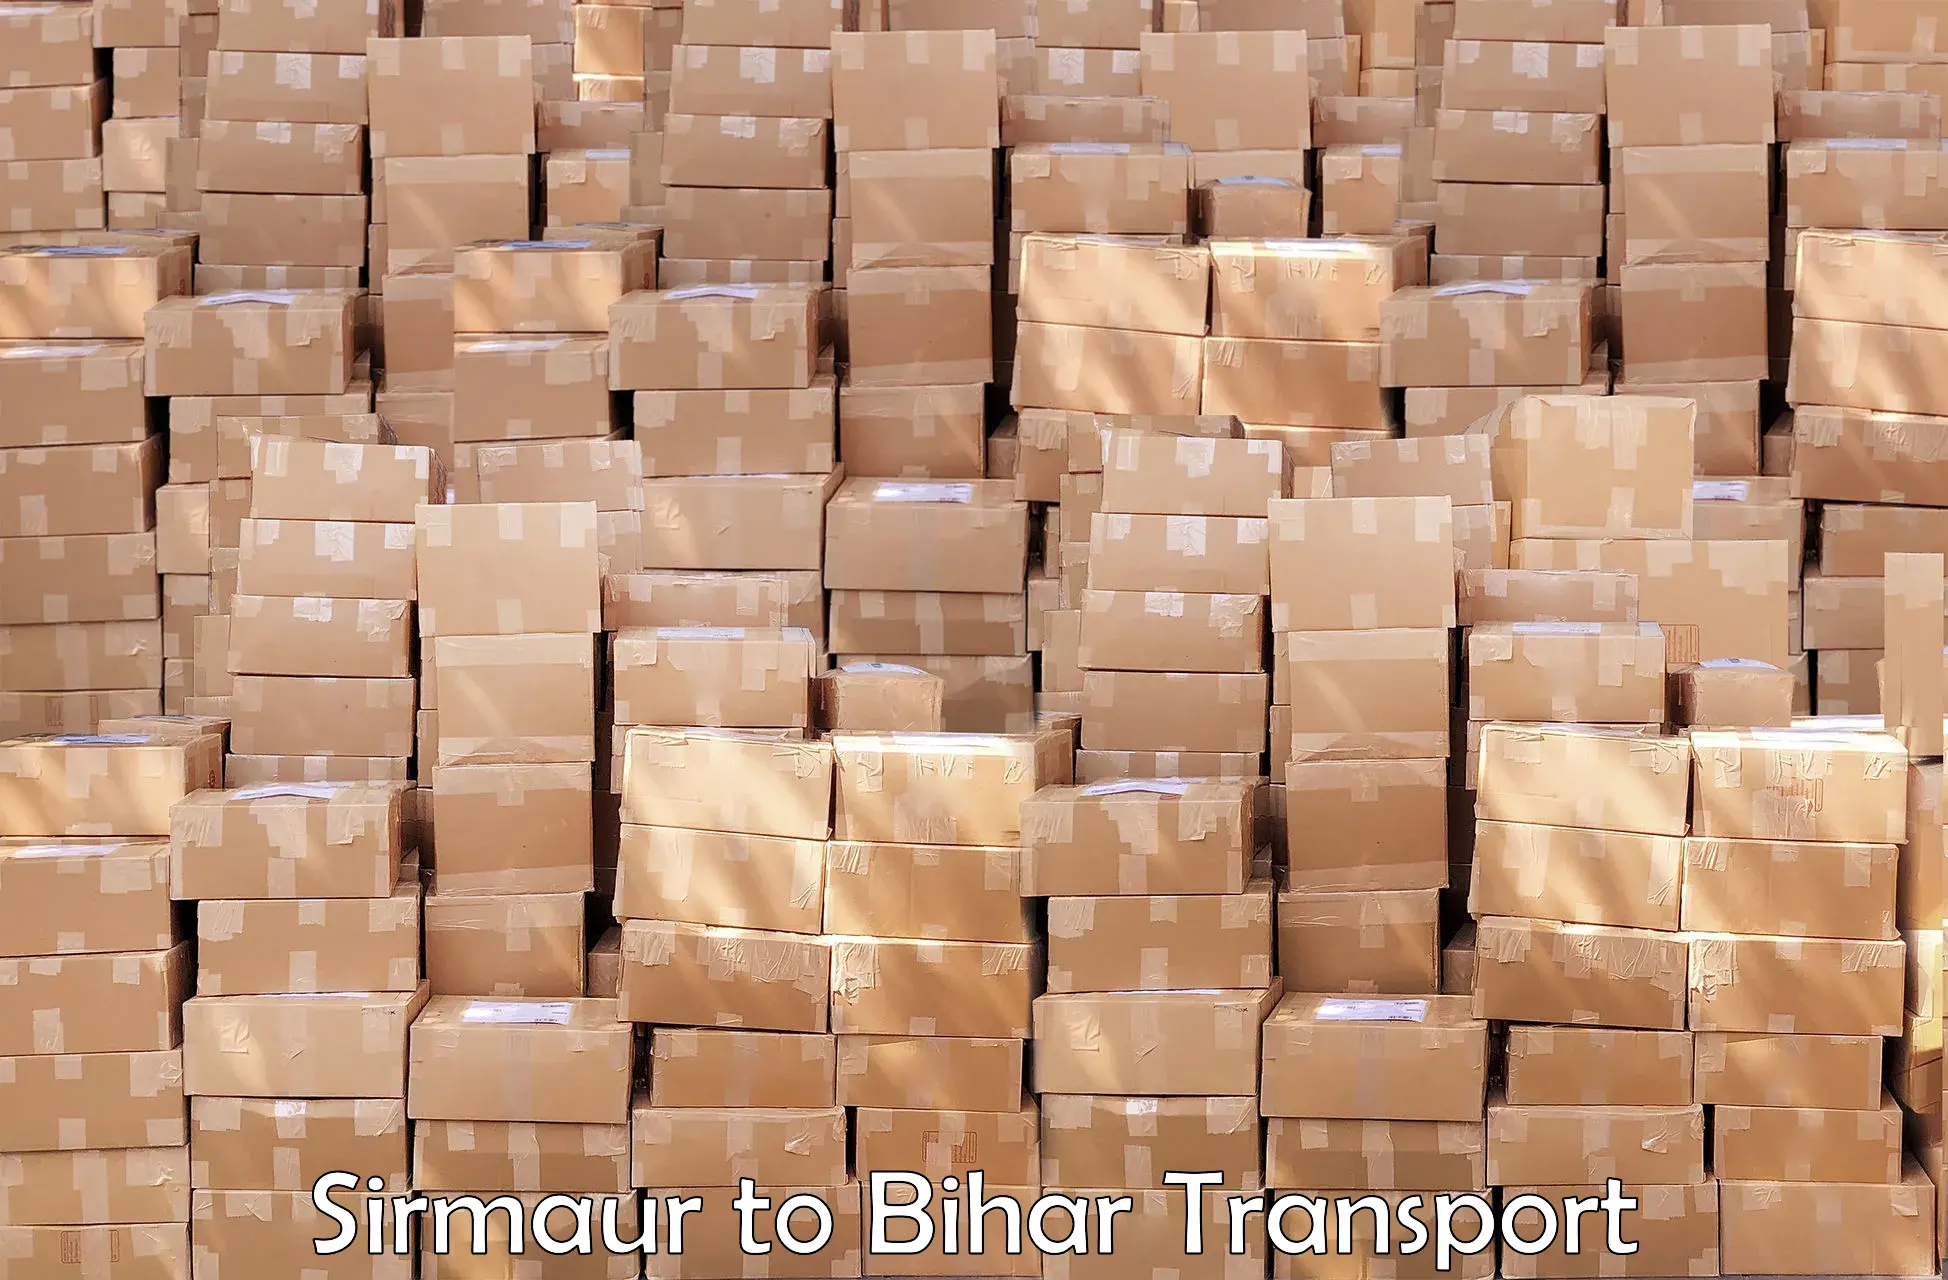 Goods delivery service Sirmaur to Bikramganj